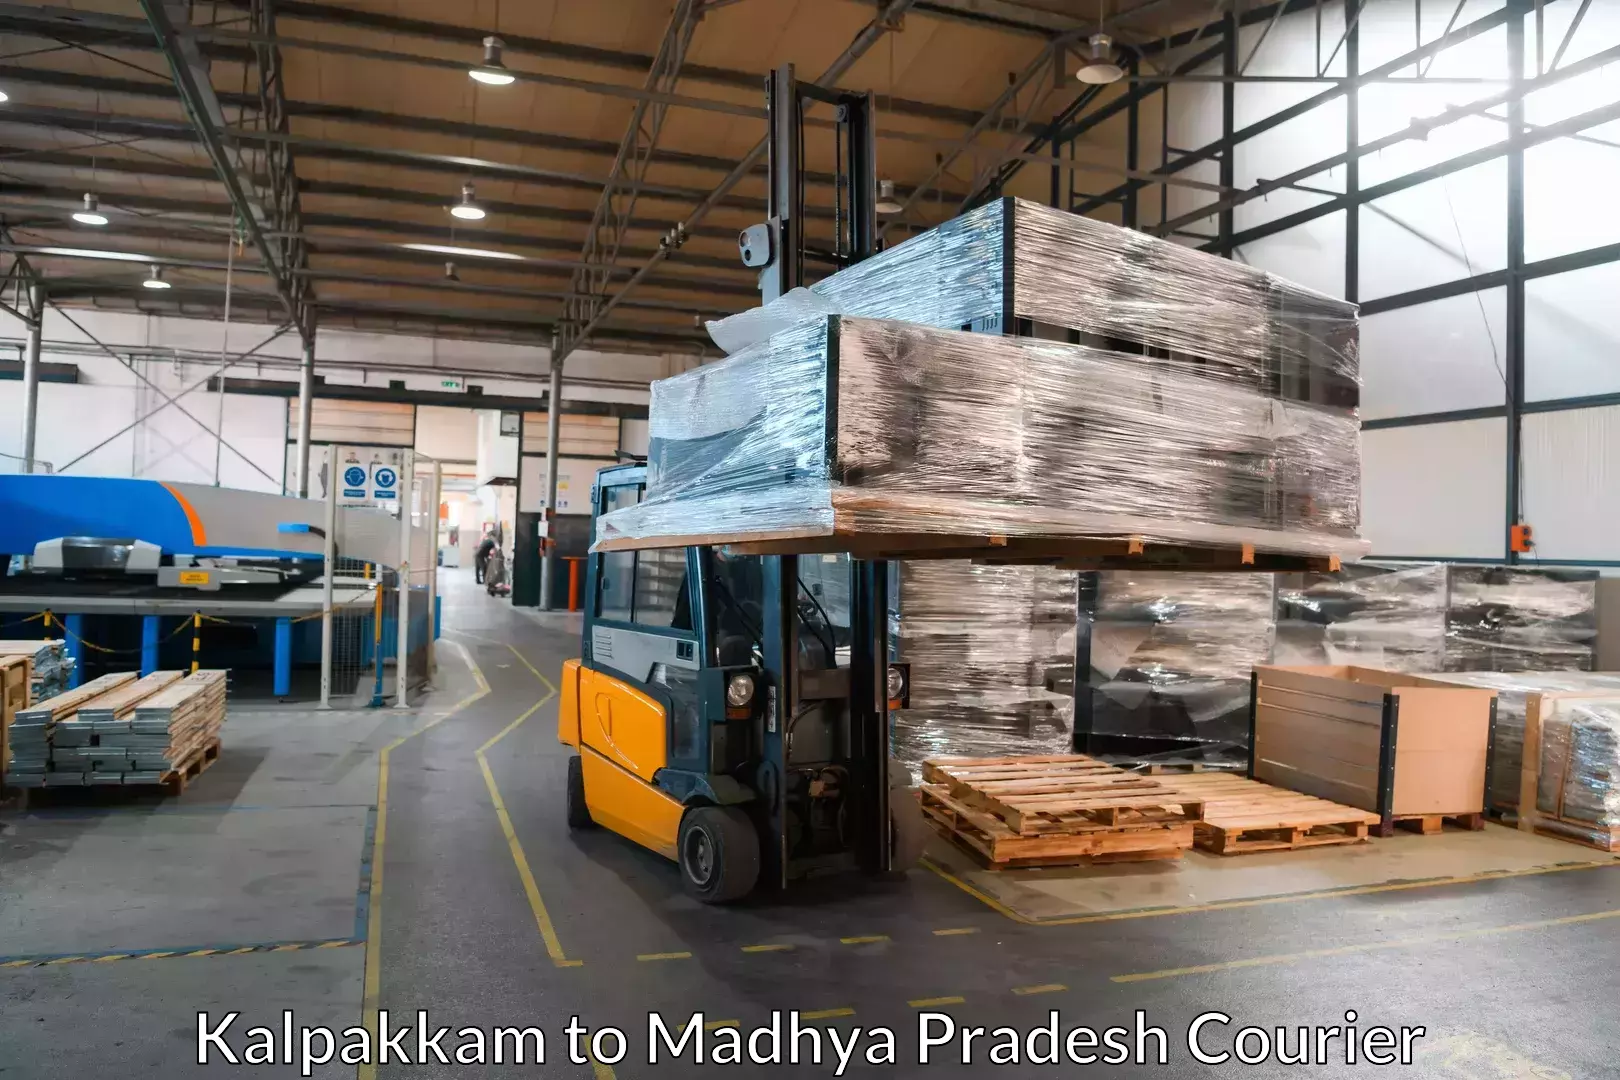 Moving and packing experts Kalpakkam to Sardarpur